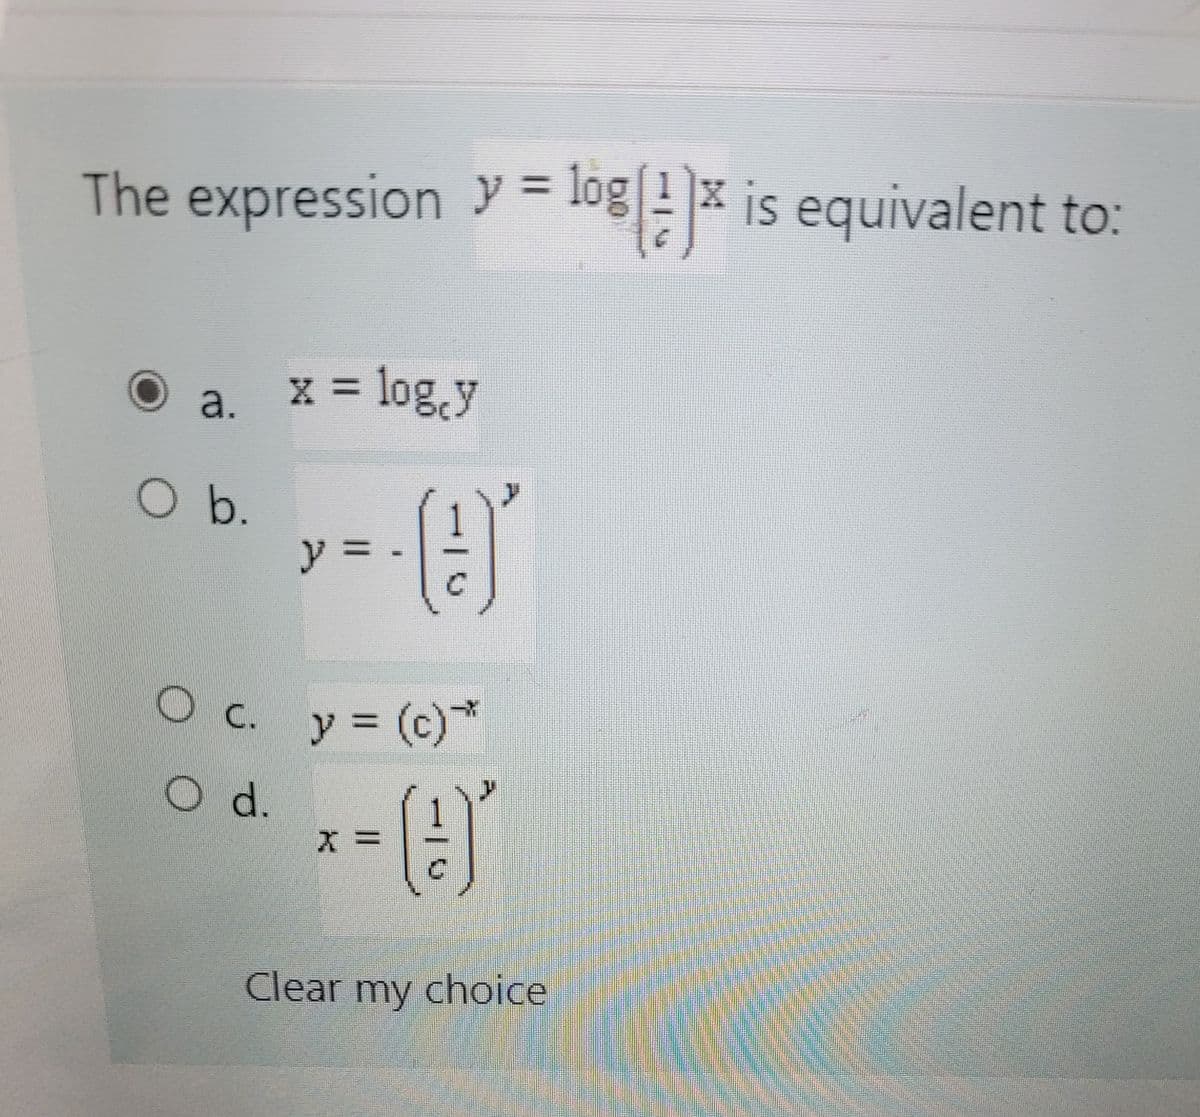 The expression y = log ! x is equivalent to:
%3D
a. x = log.y
O b.
y%3D
O c. y (c)
*
d.
Clear my choice
